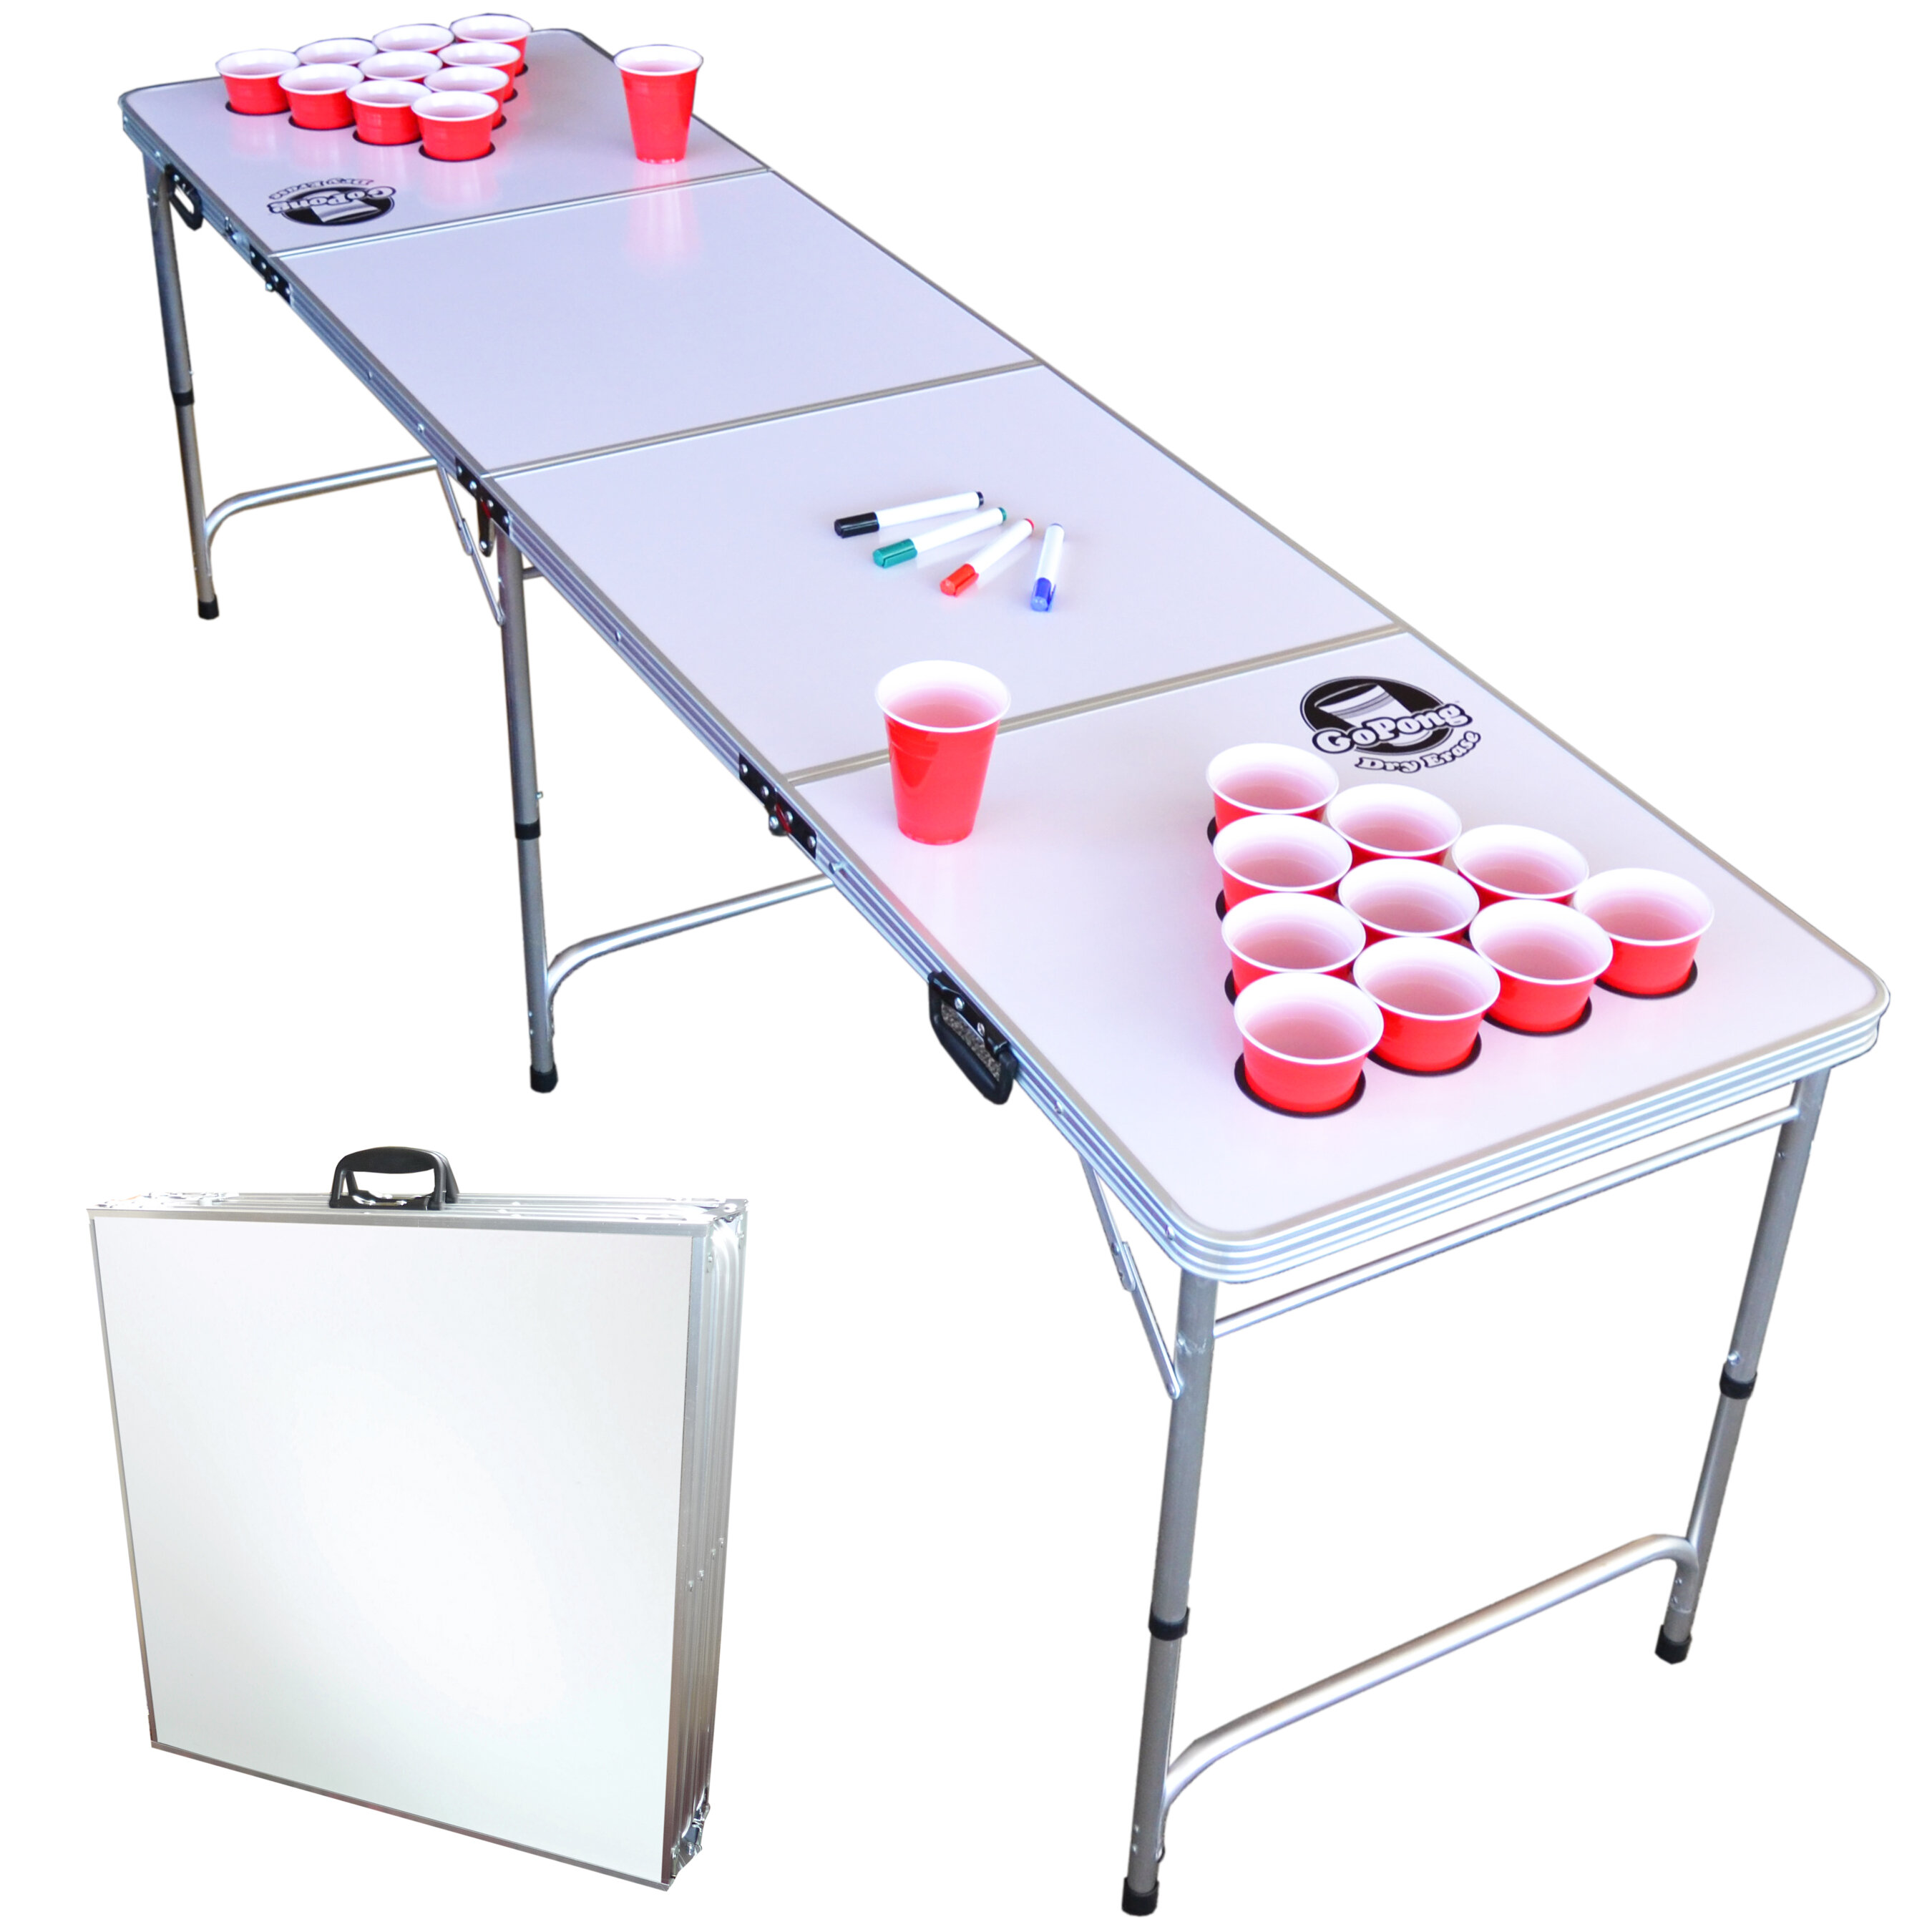 Acheter Ensemble de jeu de bière-pong, 14 pièces. en ligne?